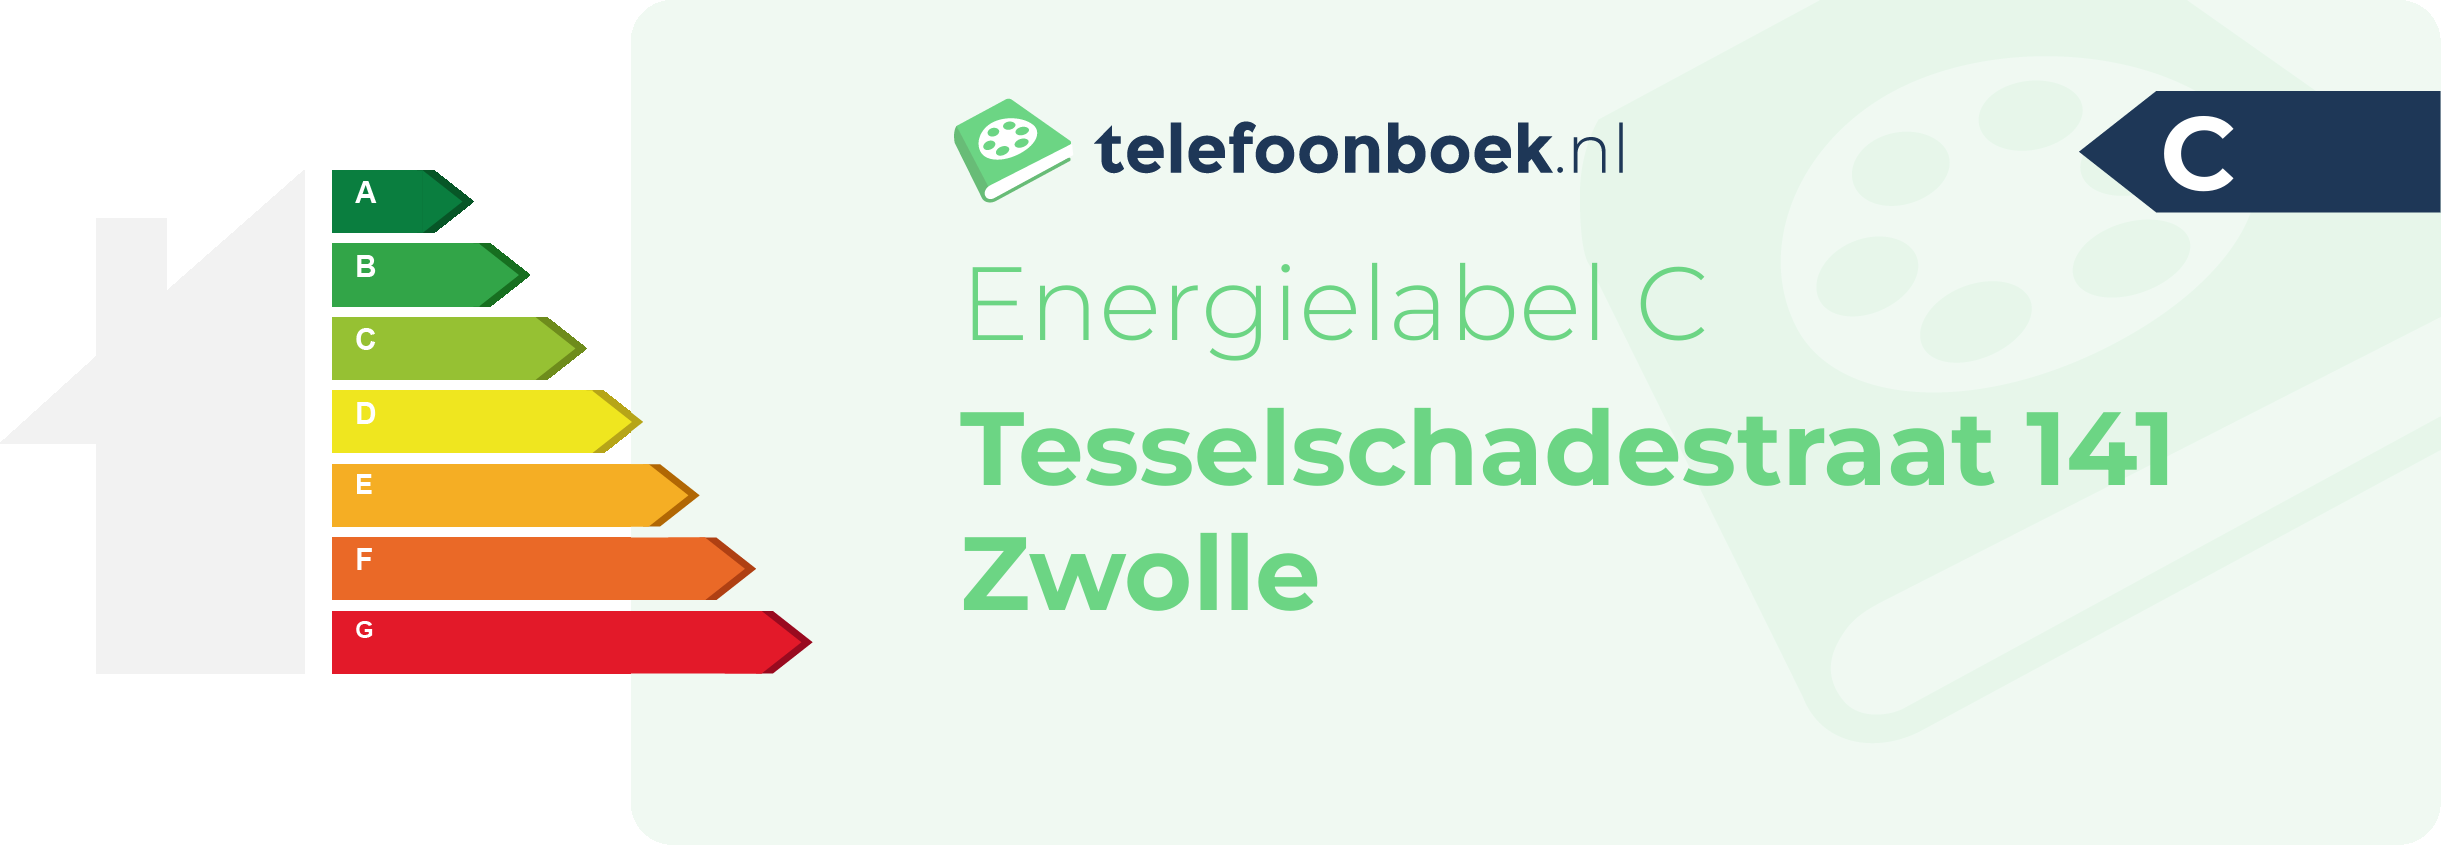 Energielabel Tesselschadestraat 141 Zwolle